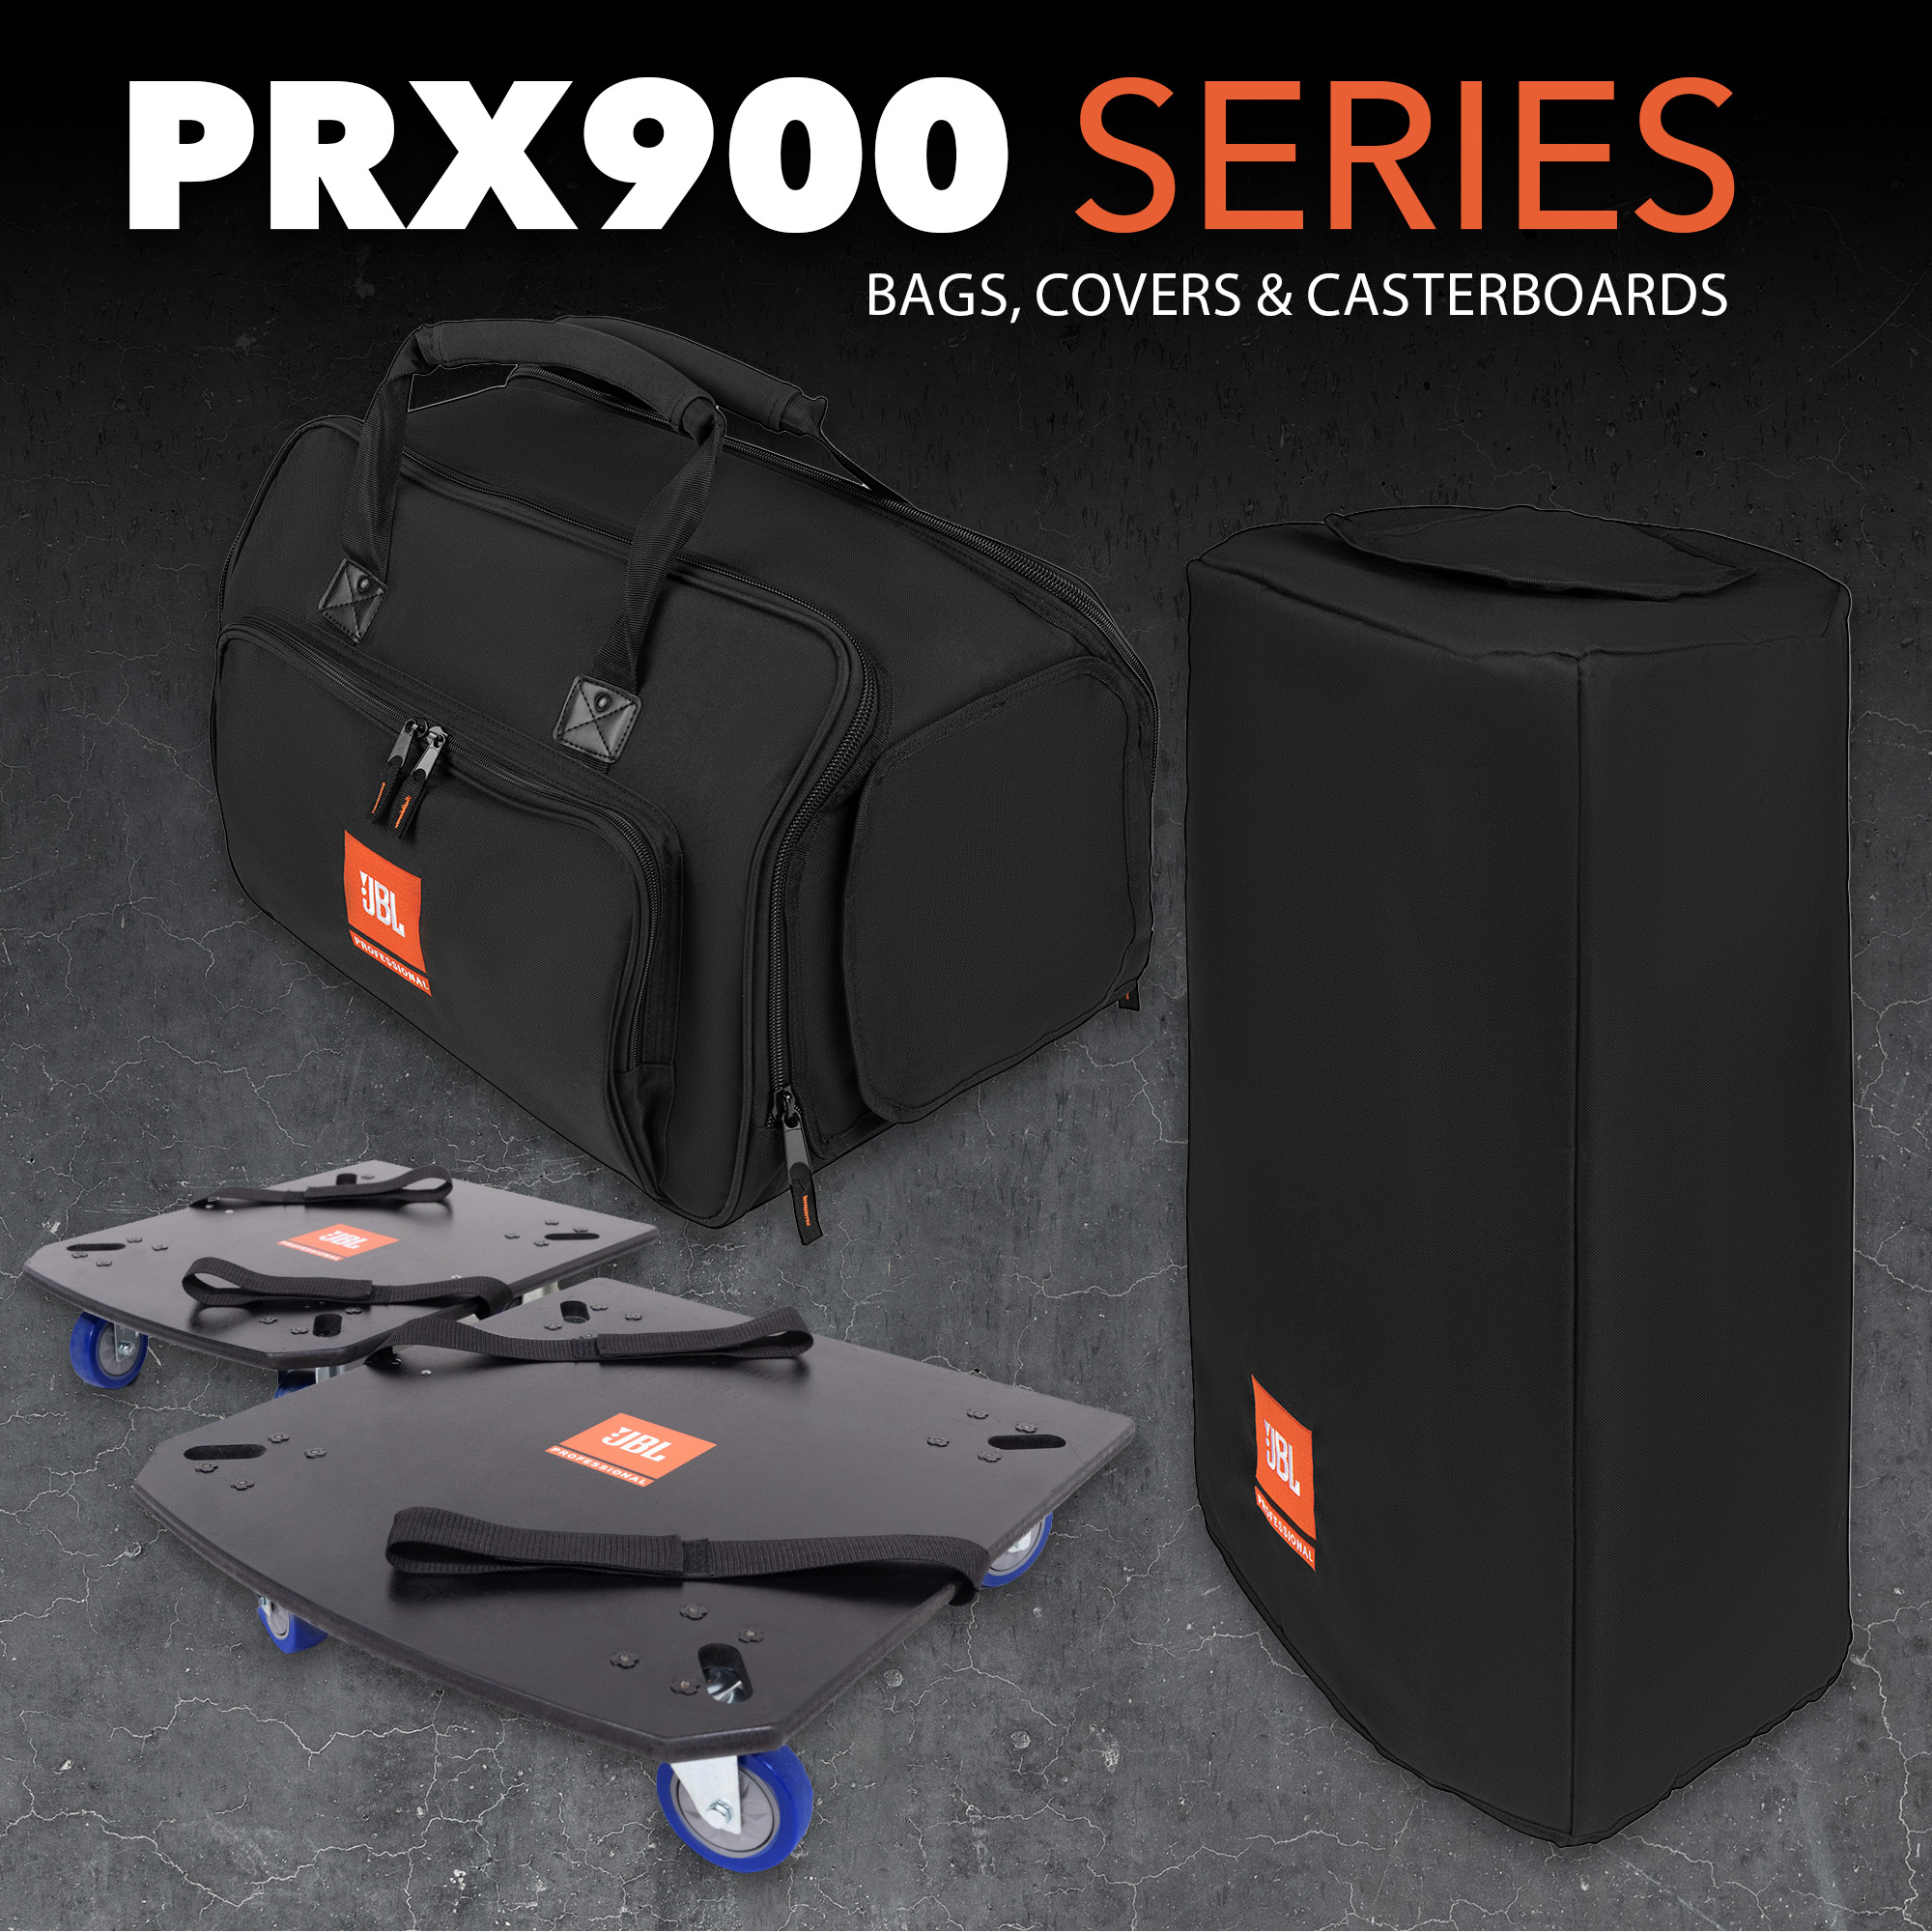 Packtalk Jbljbl Partybox 710 Waterproof Speaker Cover - Oxford Cloth  Storage Bag